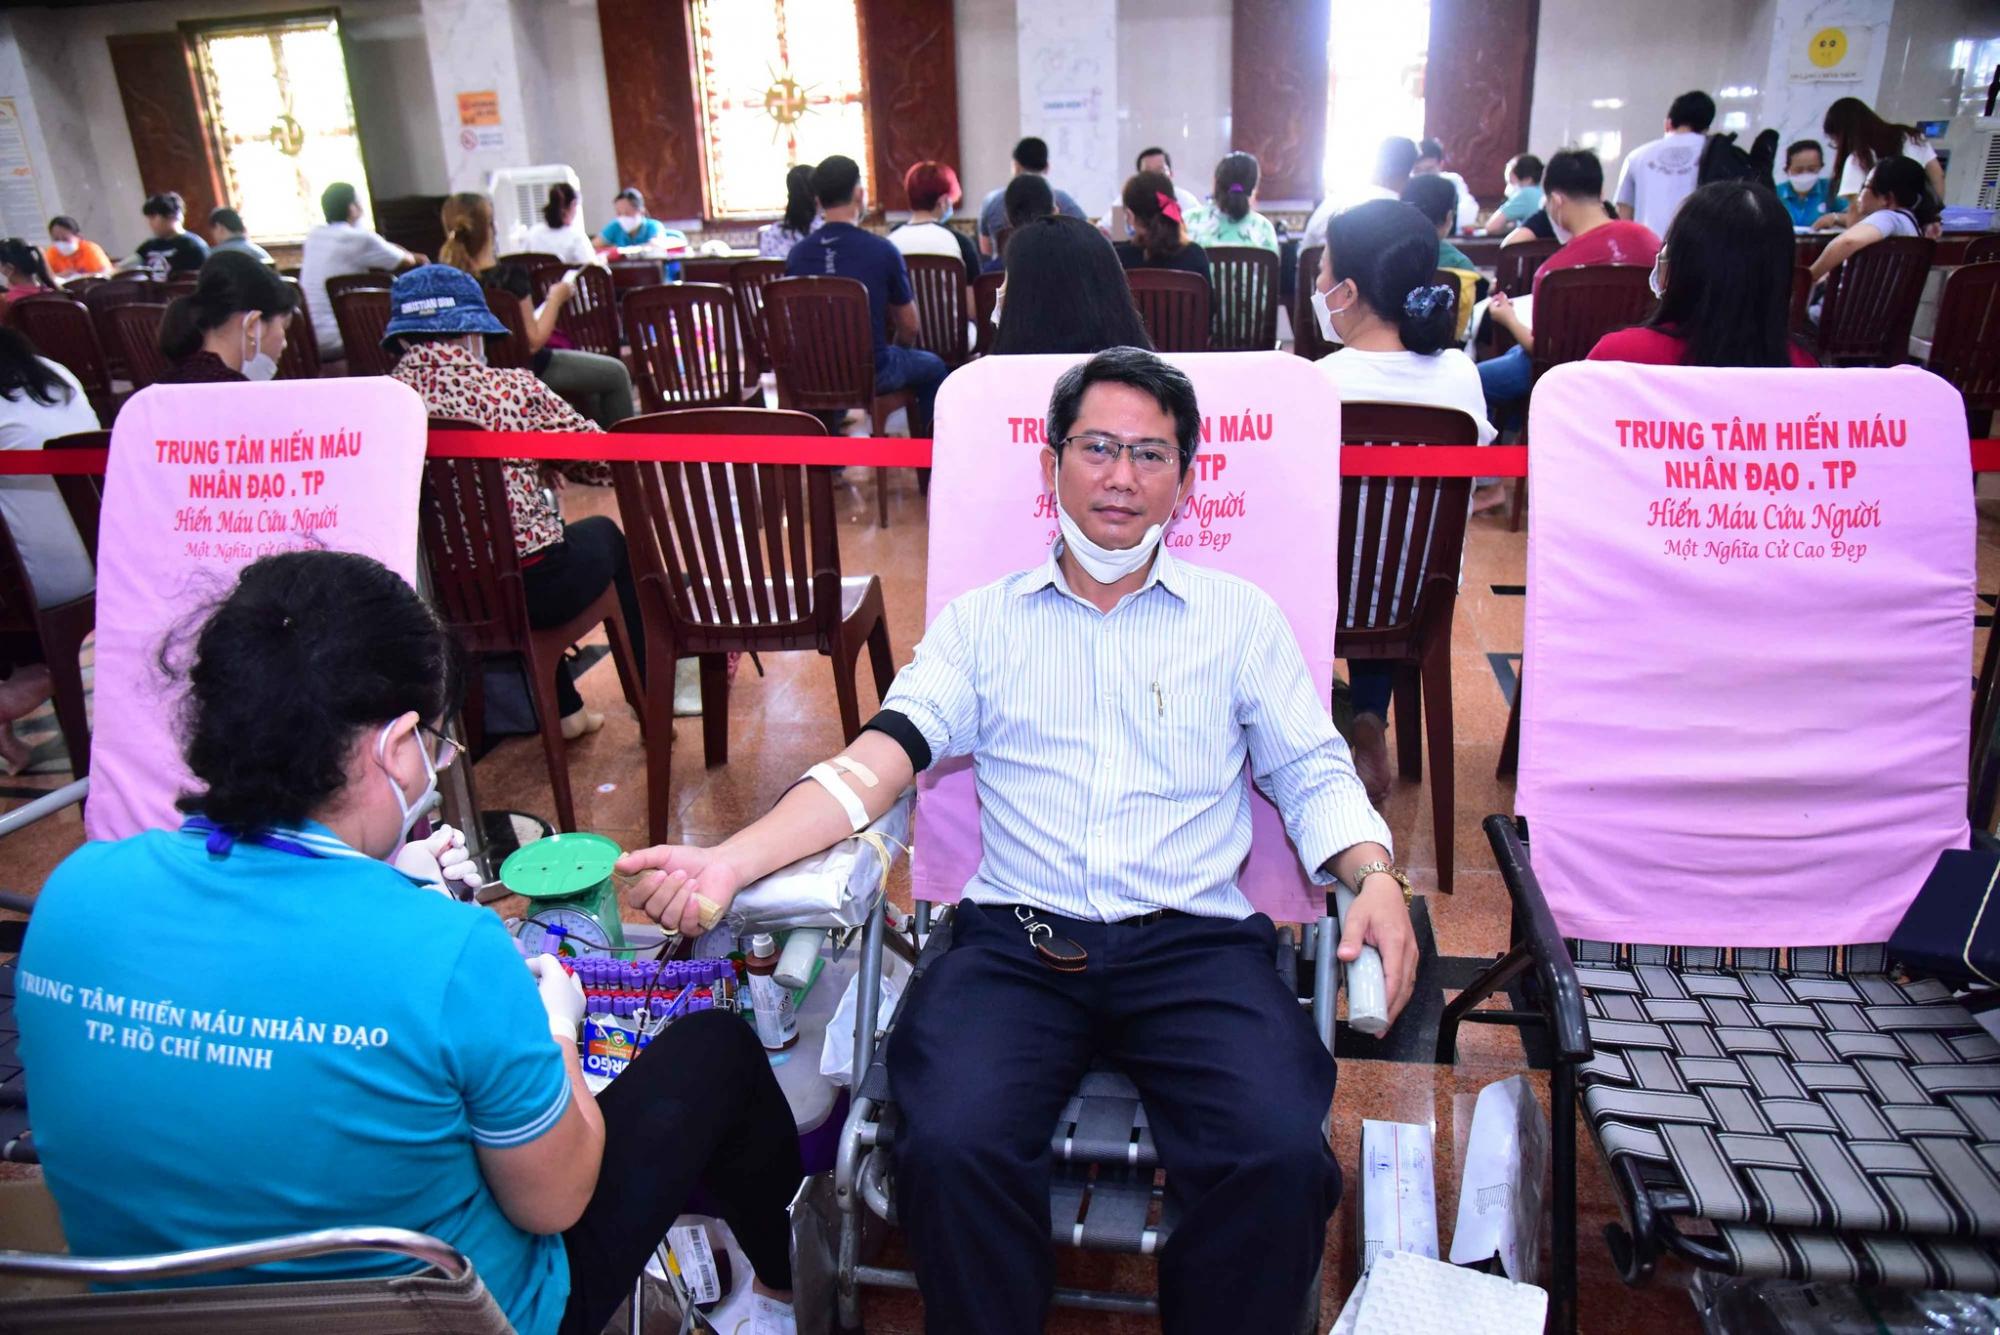 Chùa Giác Ngộ tạo thiện duyên giúp hơn 700 người hiến máu nhân đạo